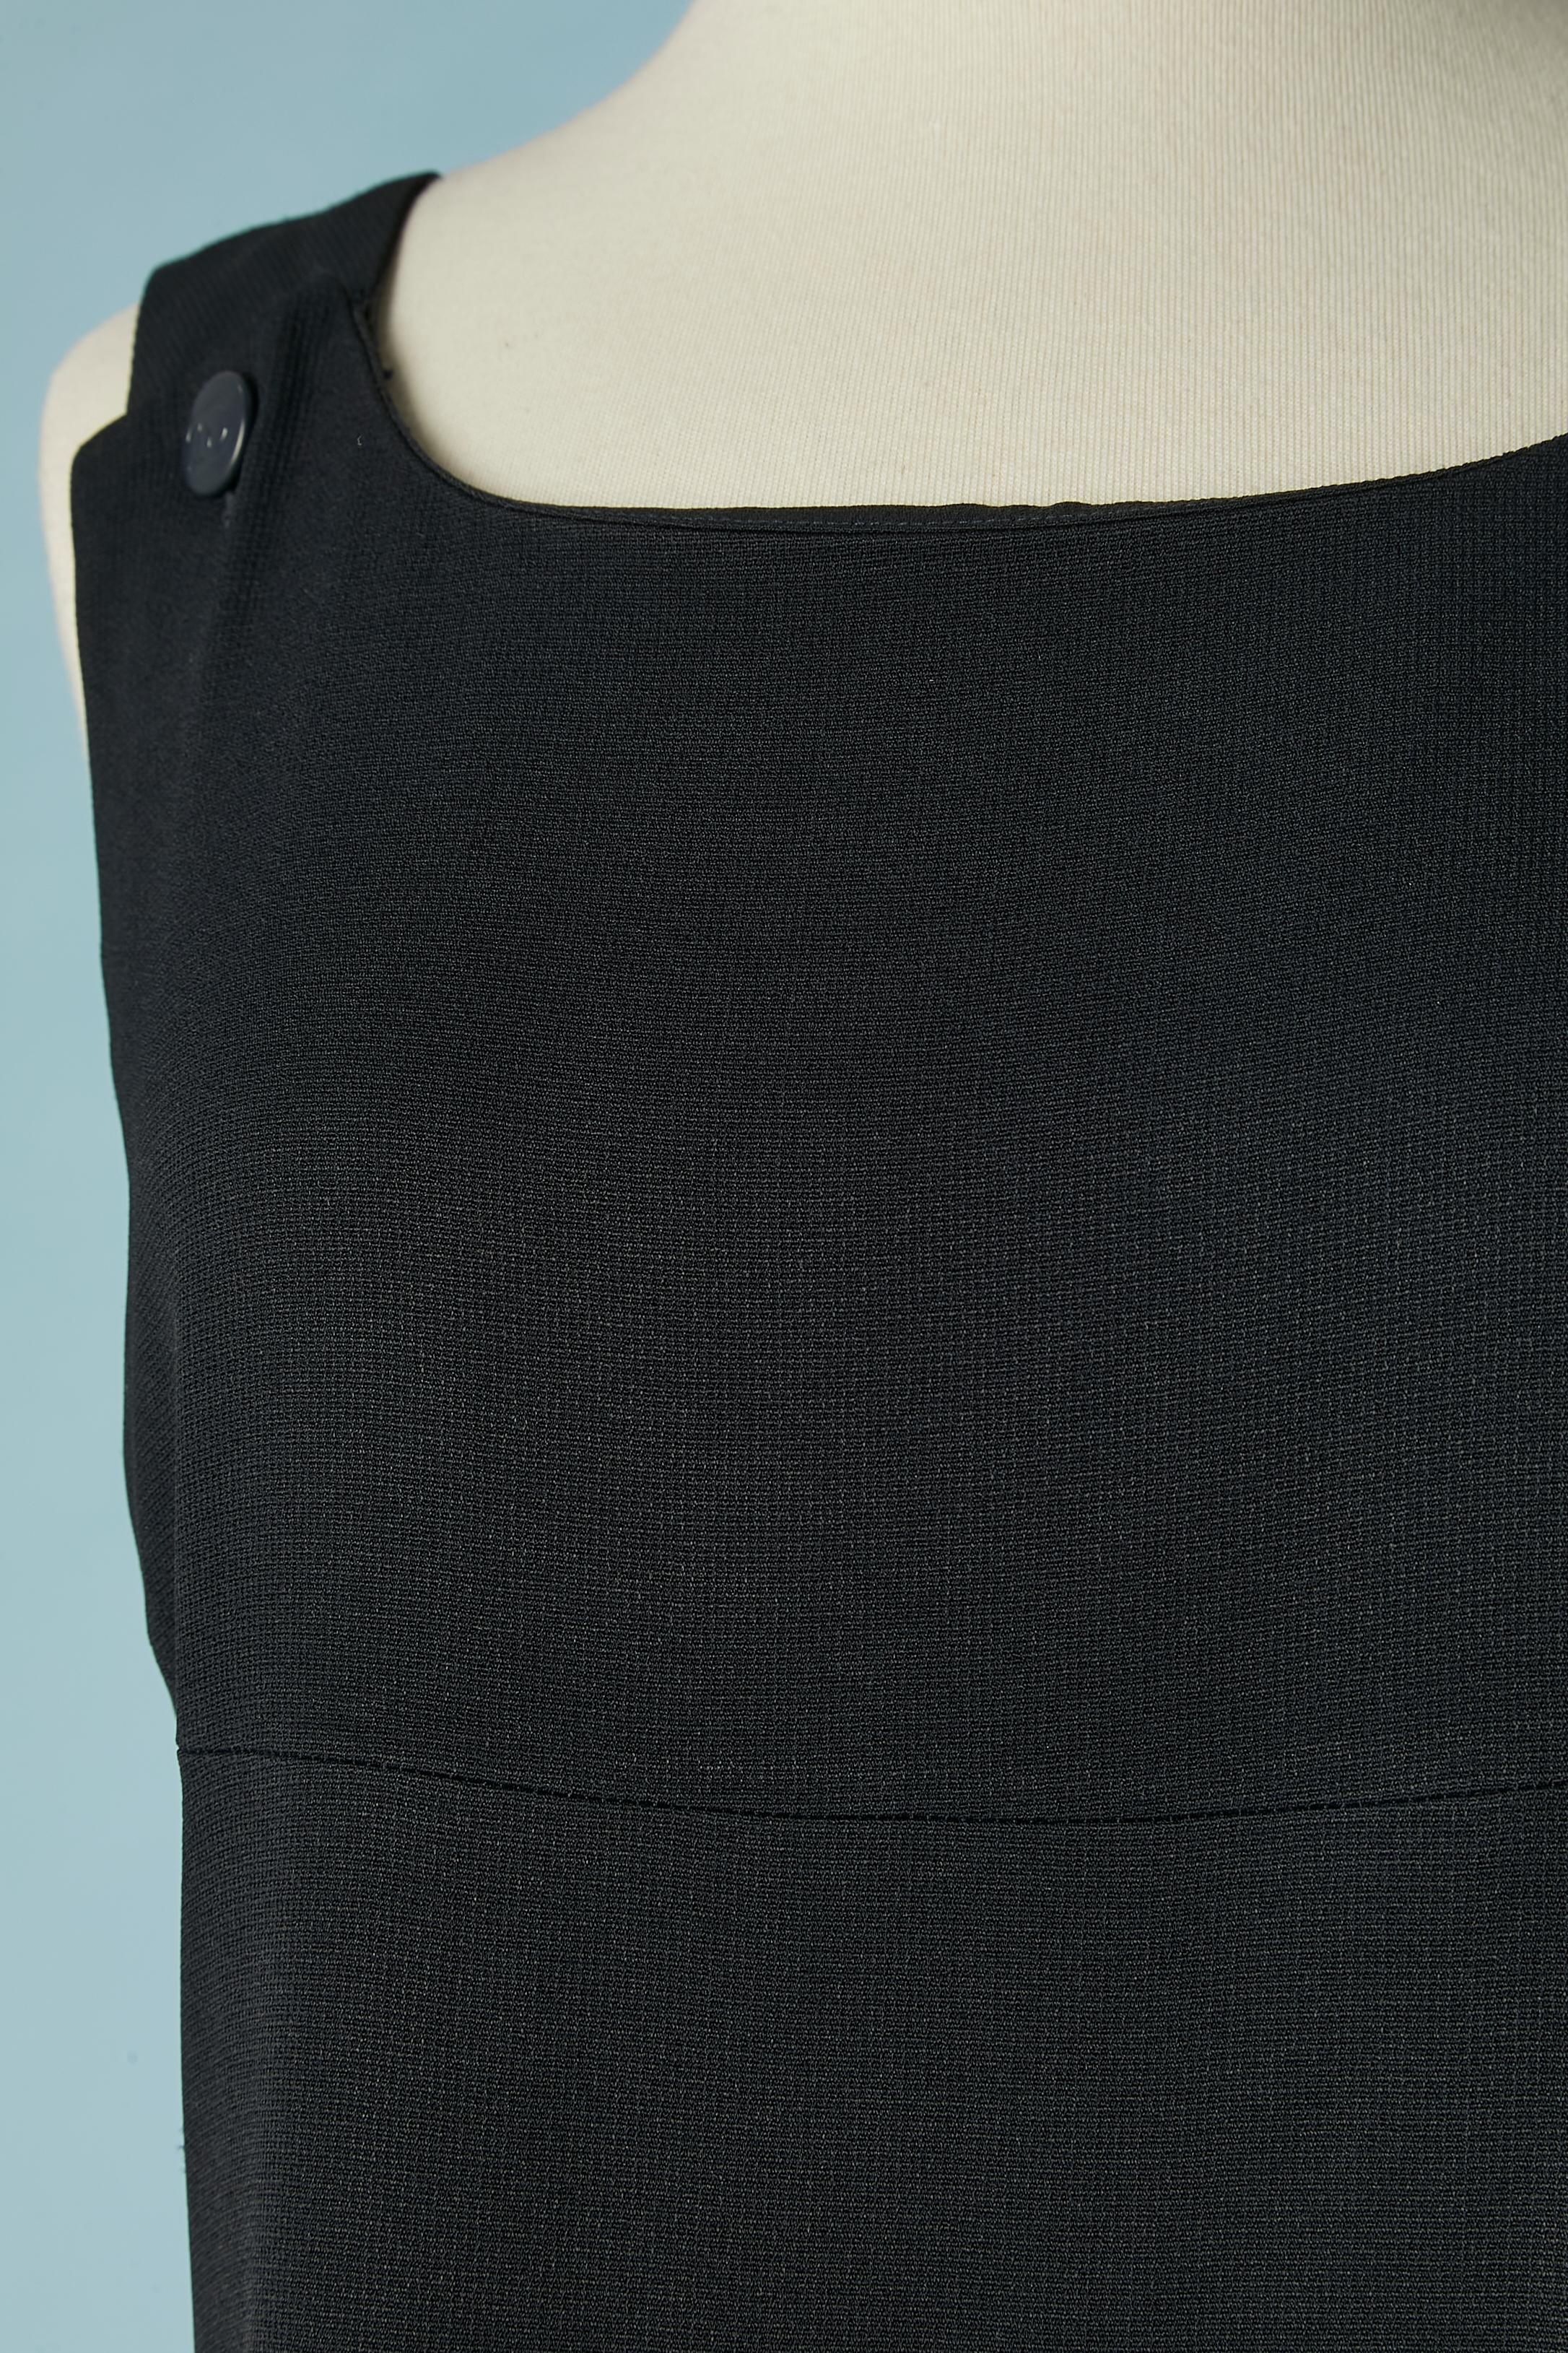 Langes, marineblaues Kleid mit Markenknopf. 
Zusammensetzung des Hauptgewebes: 51% Viskose, 49% Acetat. Futter mit Seidenmarke. 2 Knöpfe auf der Vorderseite und 2 Knöpfe und Knopfloch auf der Rückseite. Verdeckter Reißverschluss in der hinteren